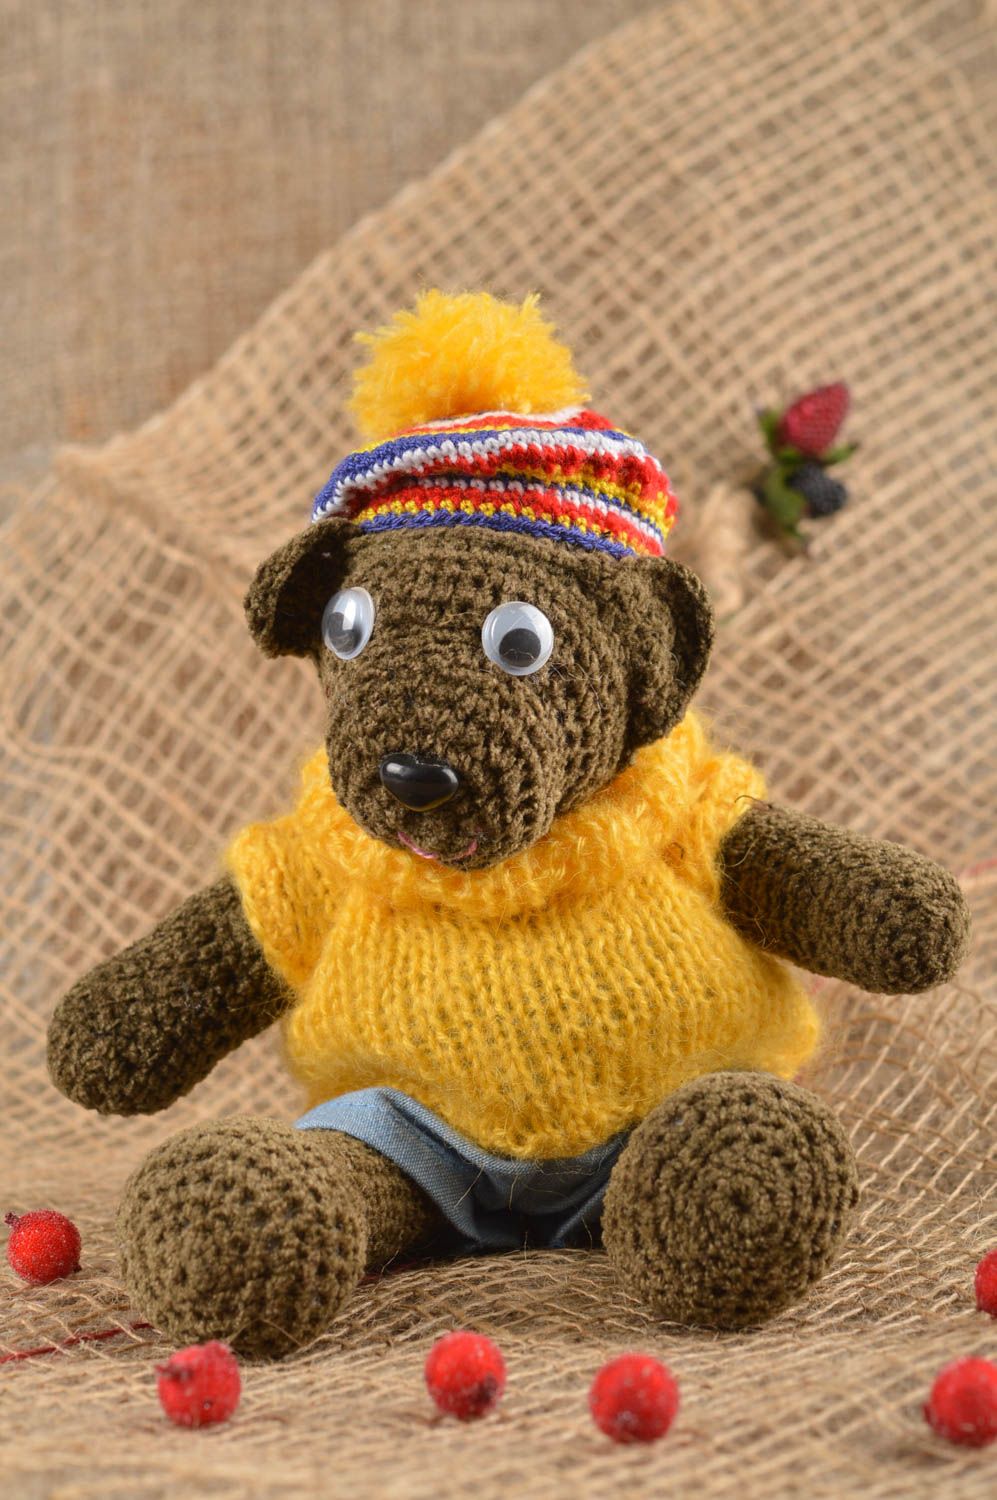 Handmade crocheted soft woolen toy bear designer child toy gift idea children photo 2